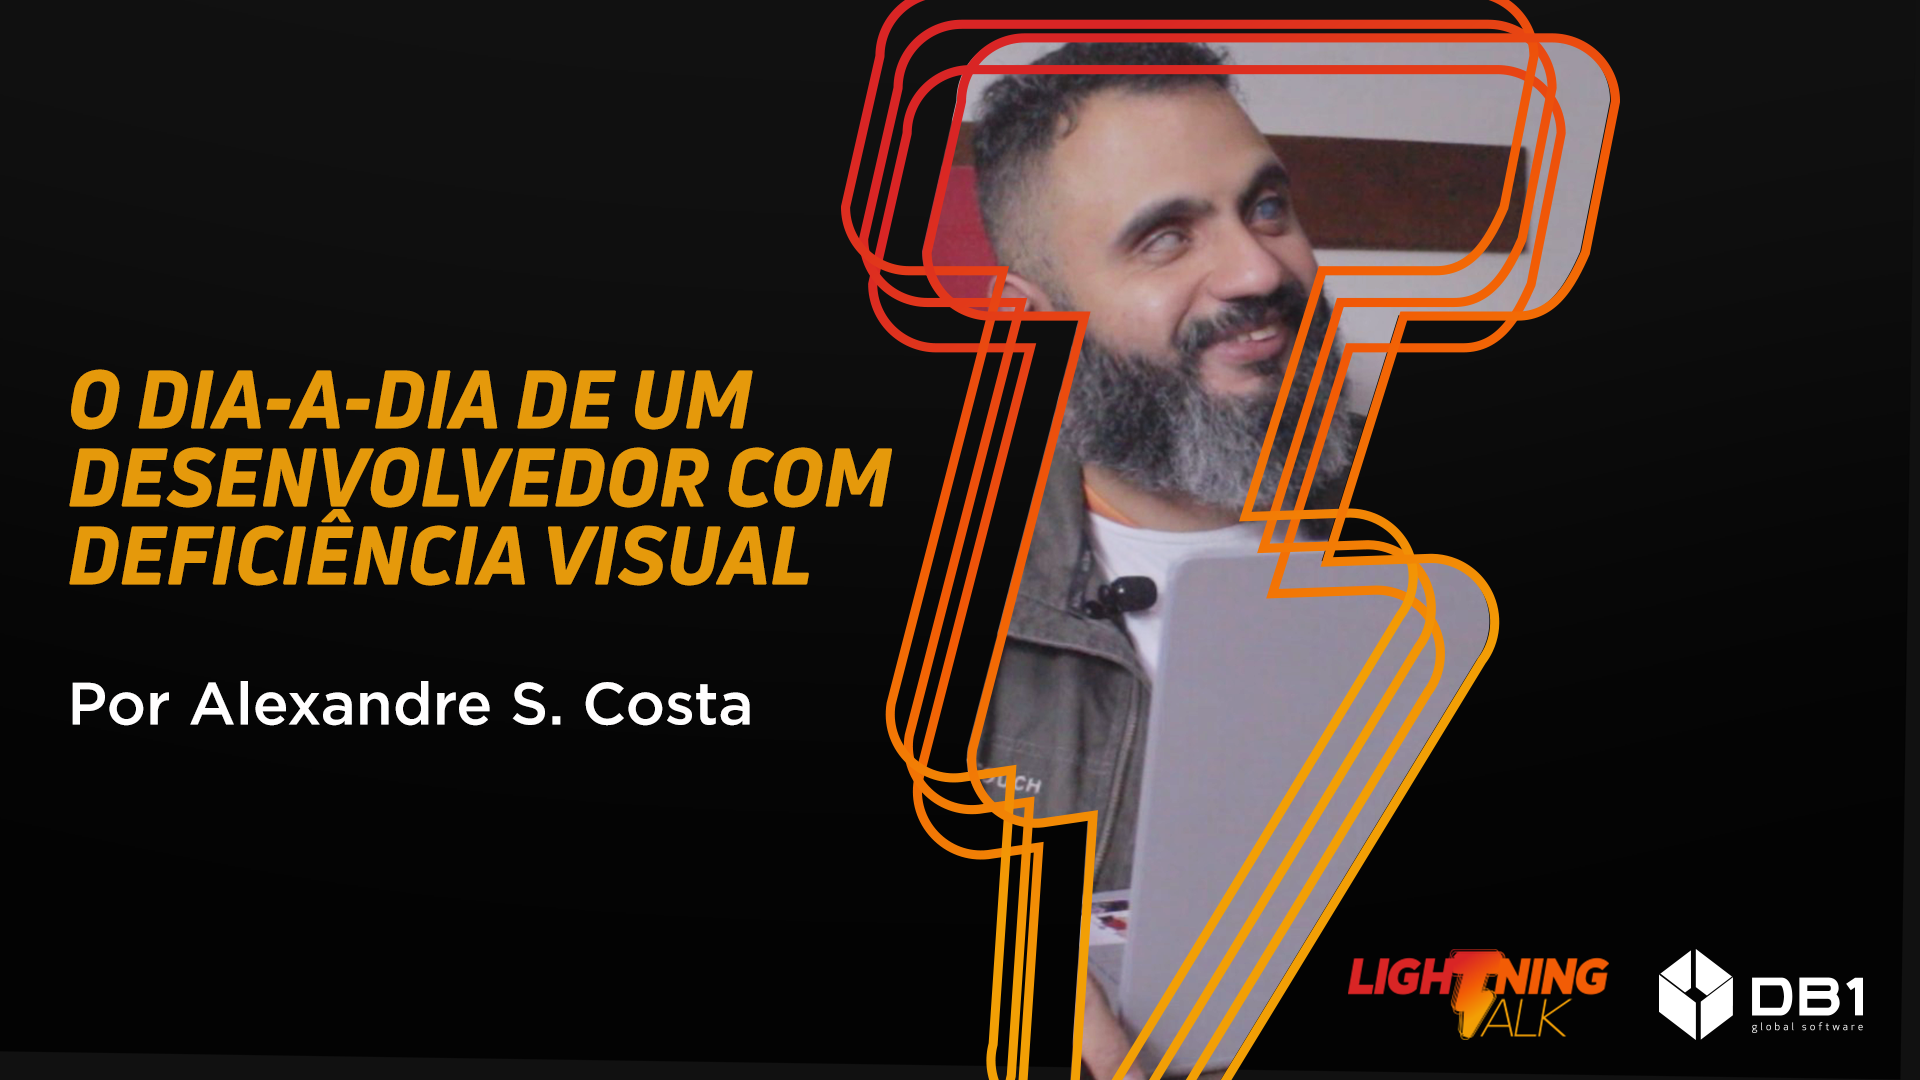 Alexandre Costa, desenvolvedor com deficiência visual